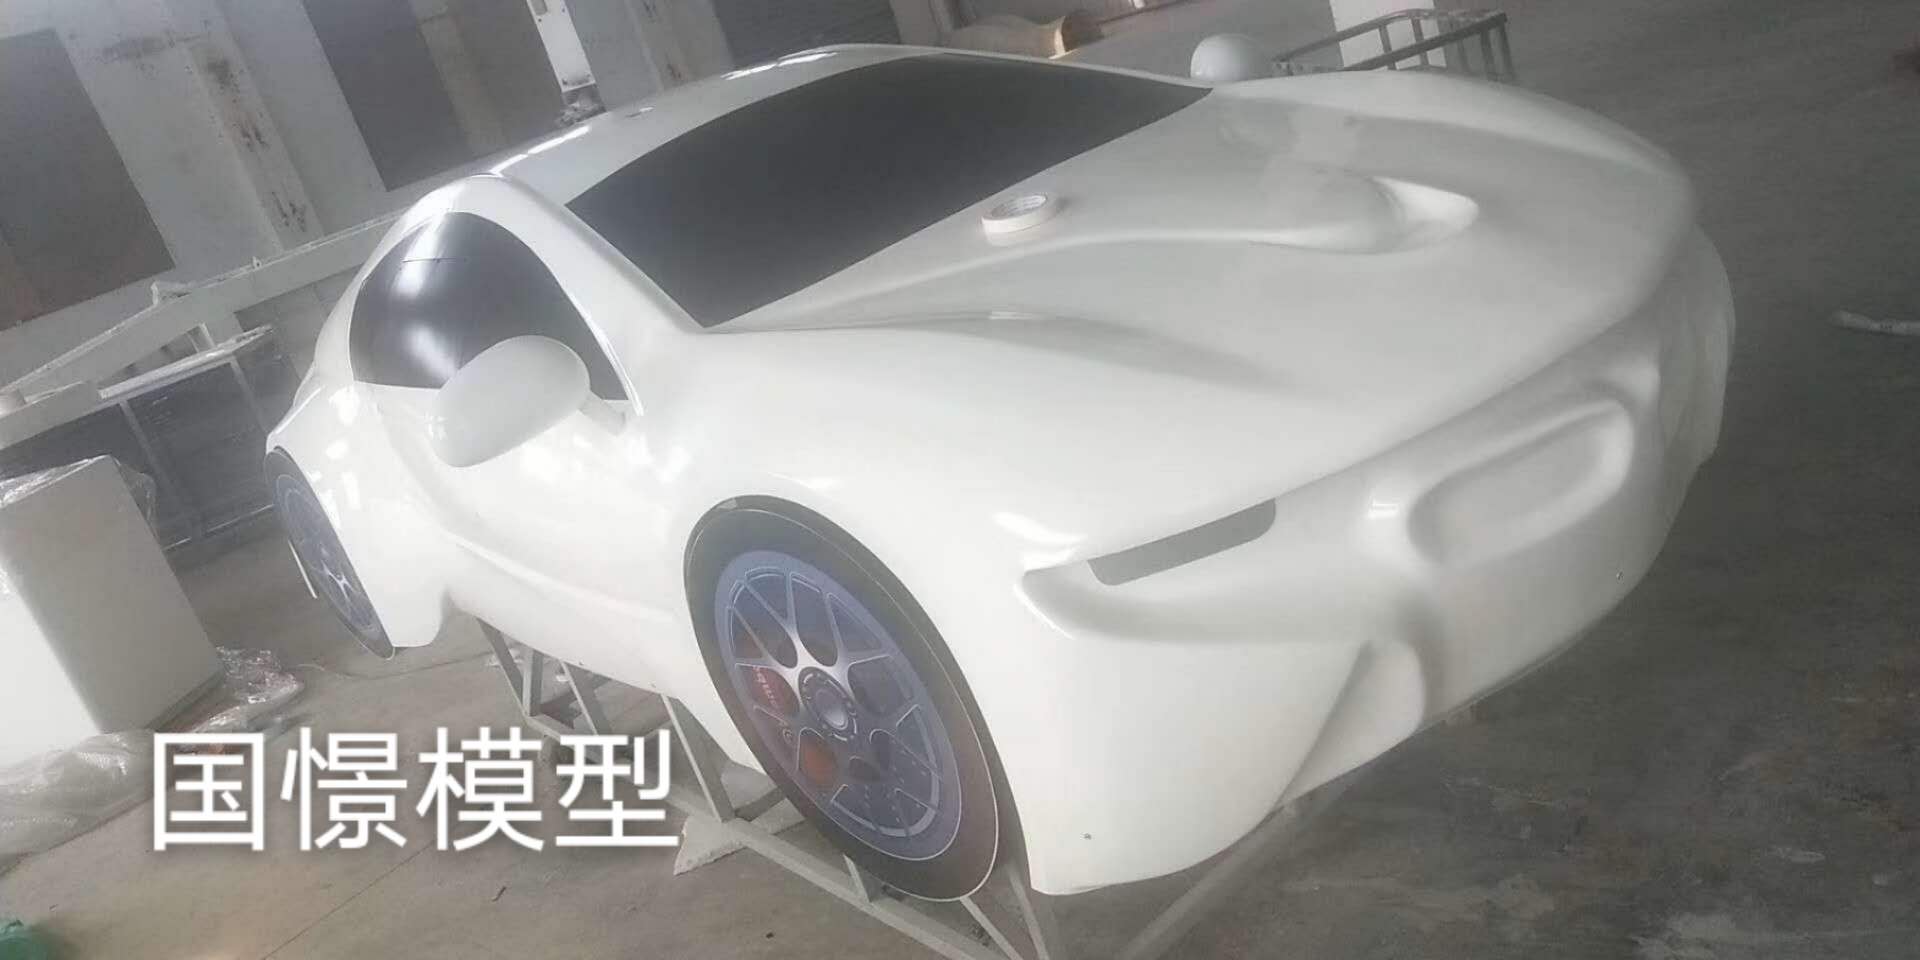 吴川市车辆模型